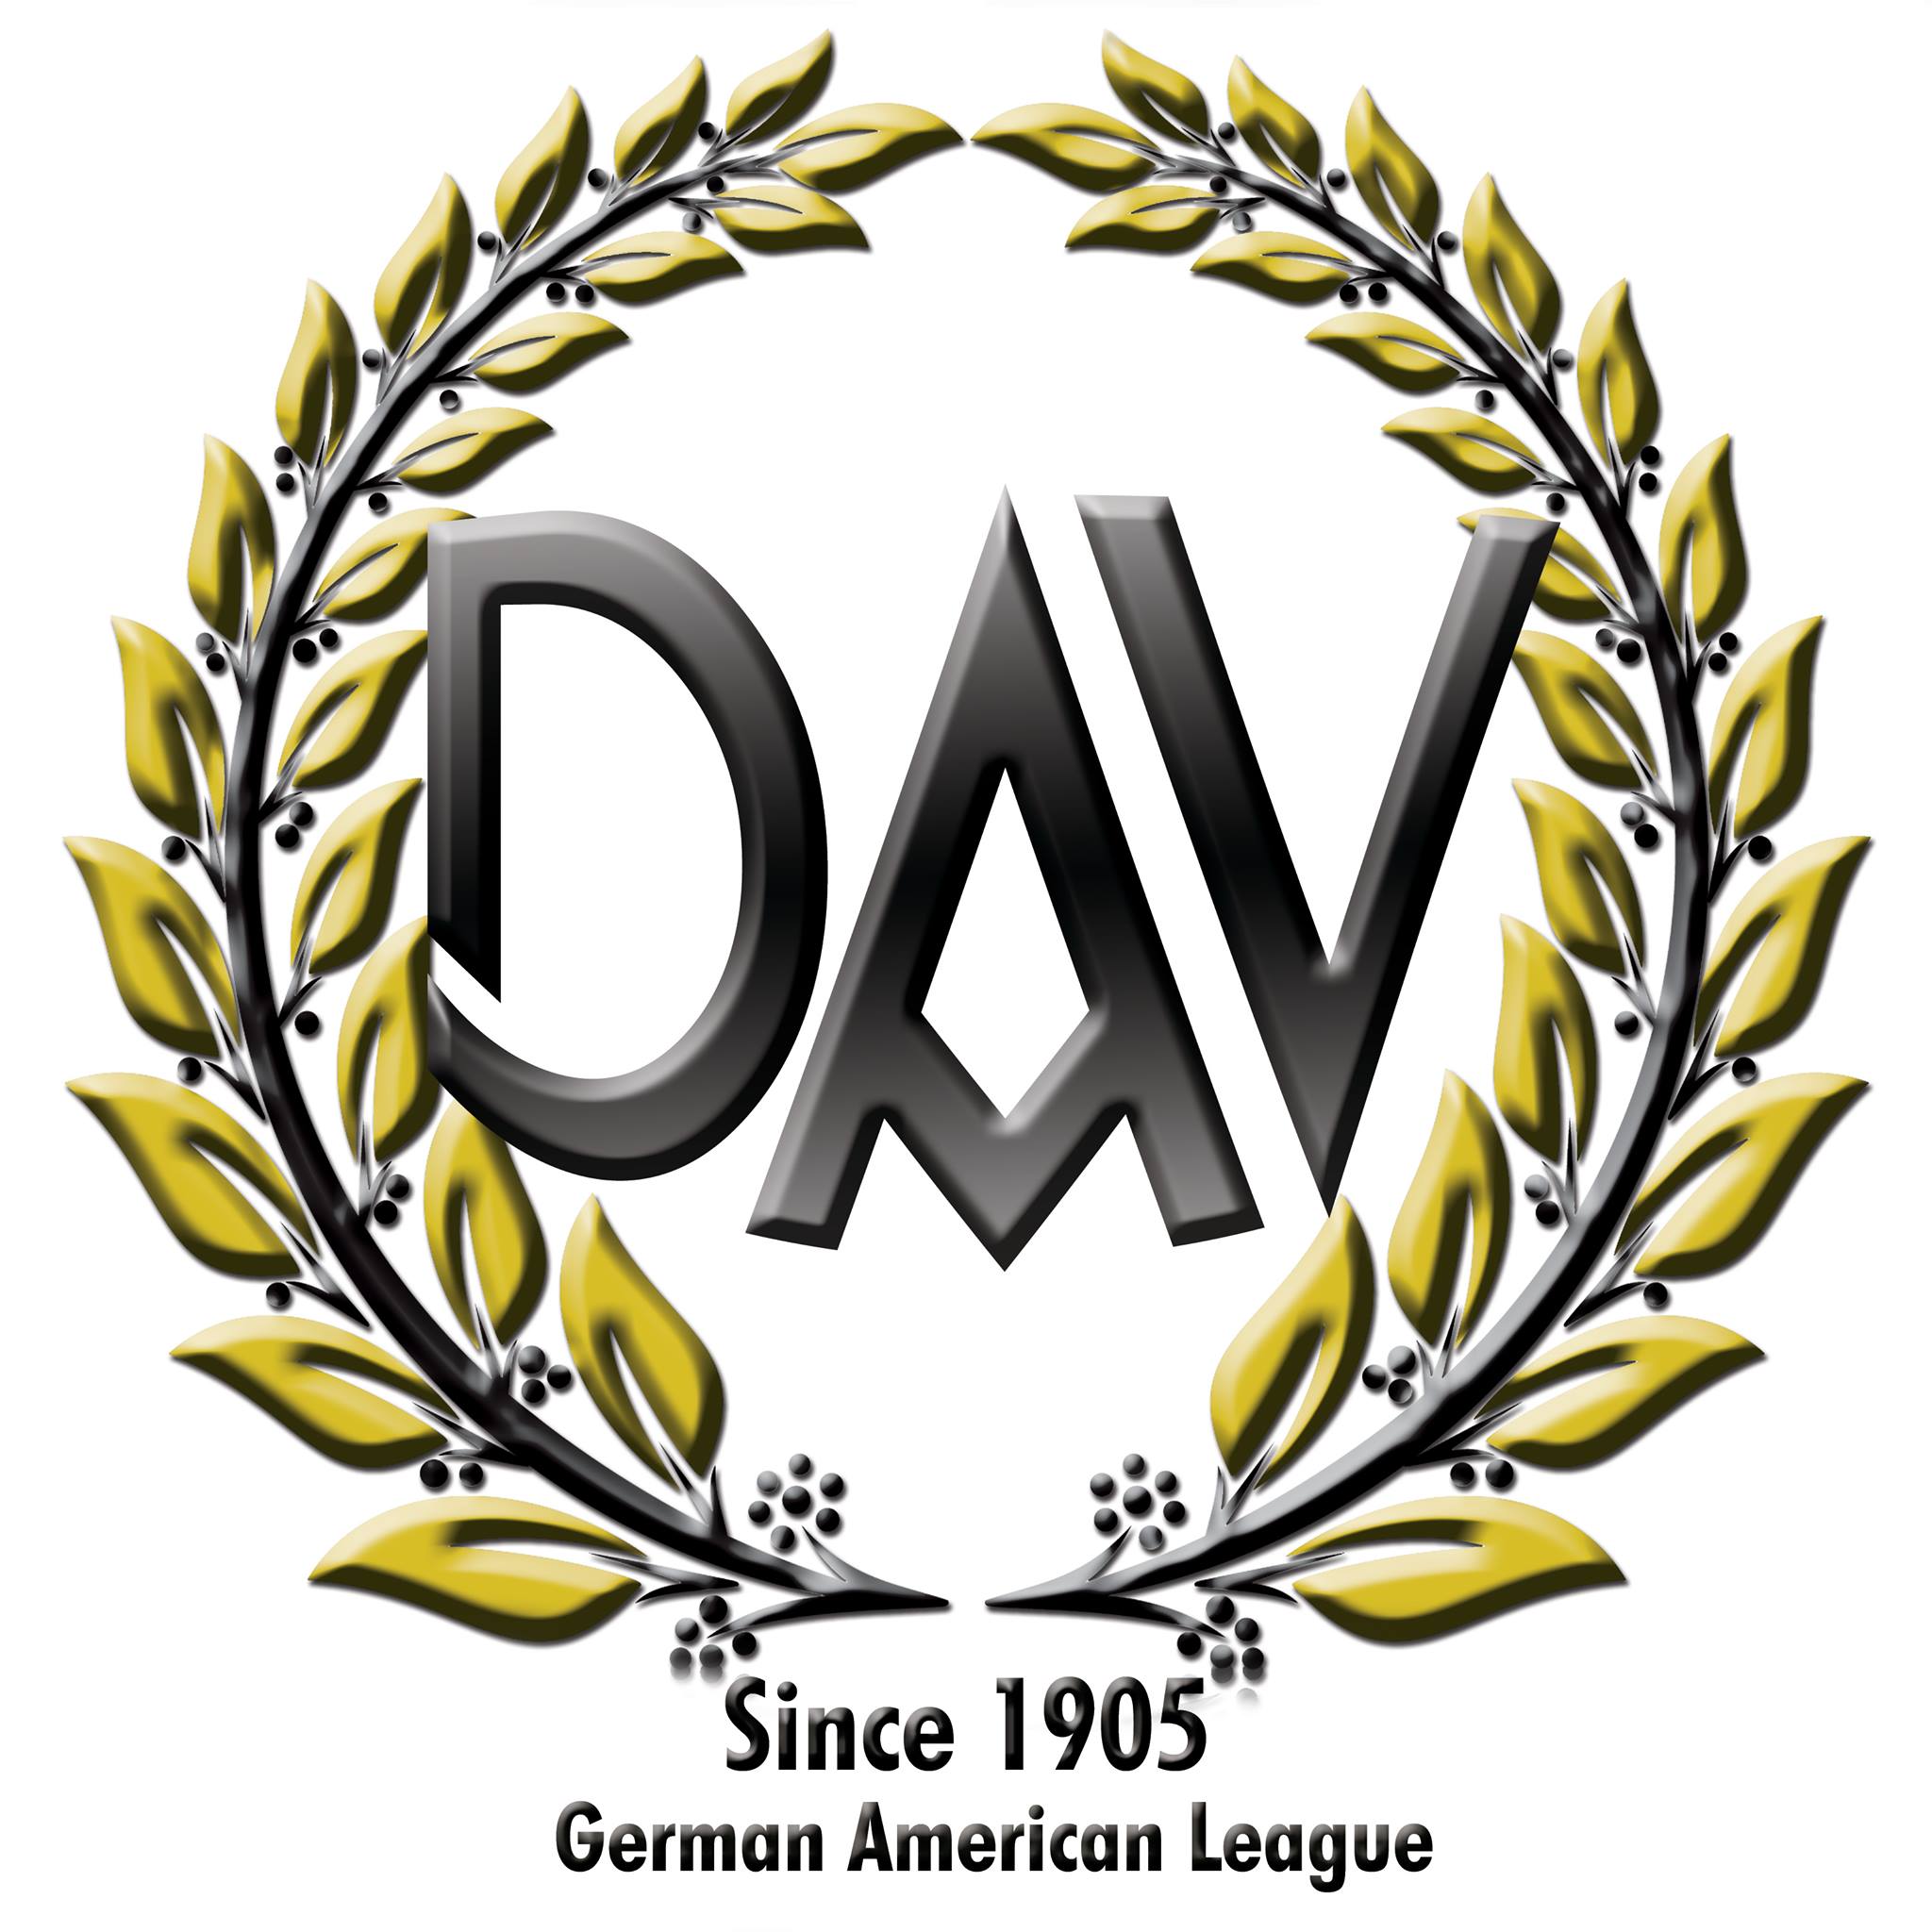 German Speaking Organizations in San Jose California - German-American League of Los Angeles, Inc., Ltd.